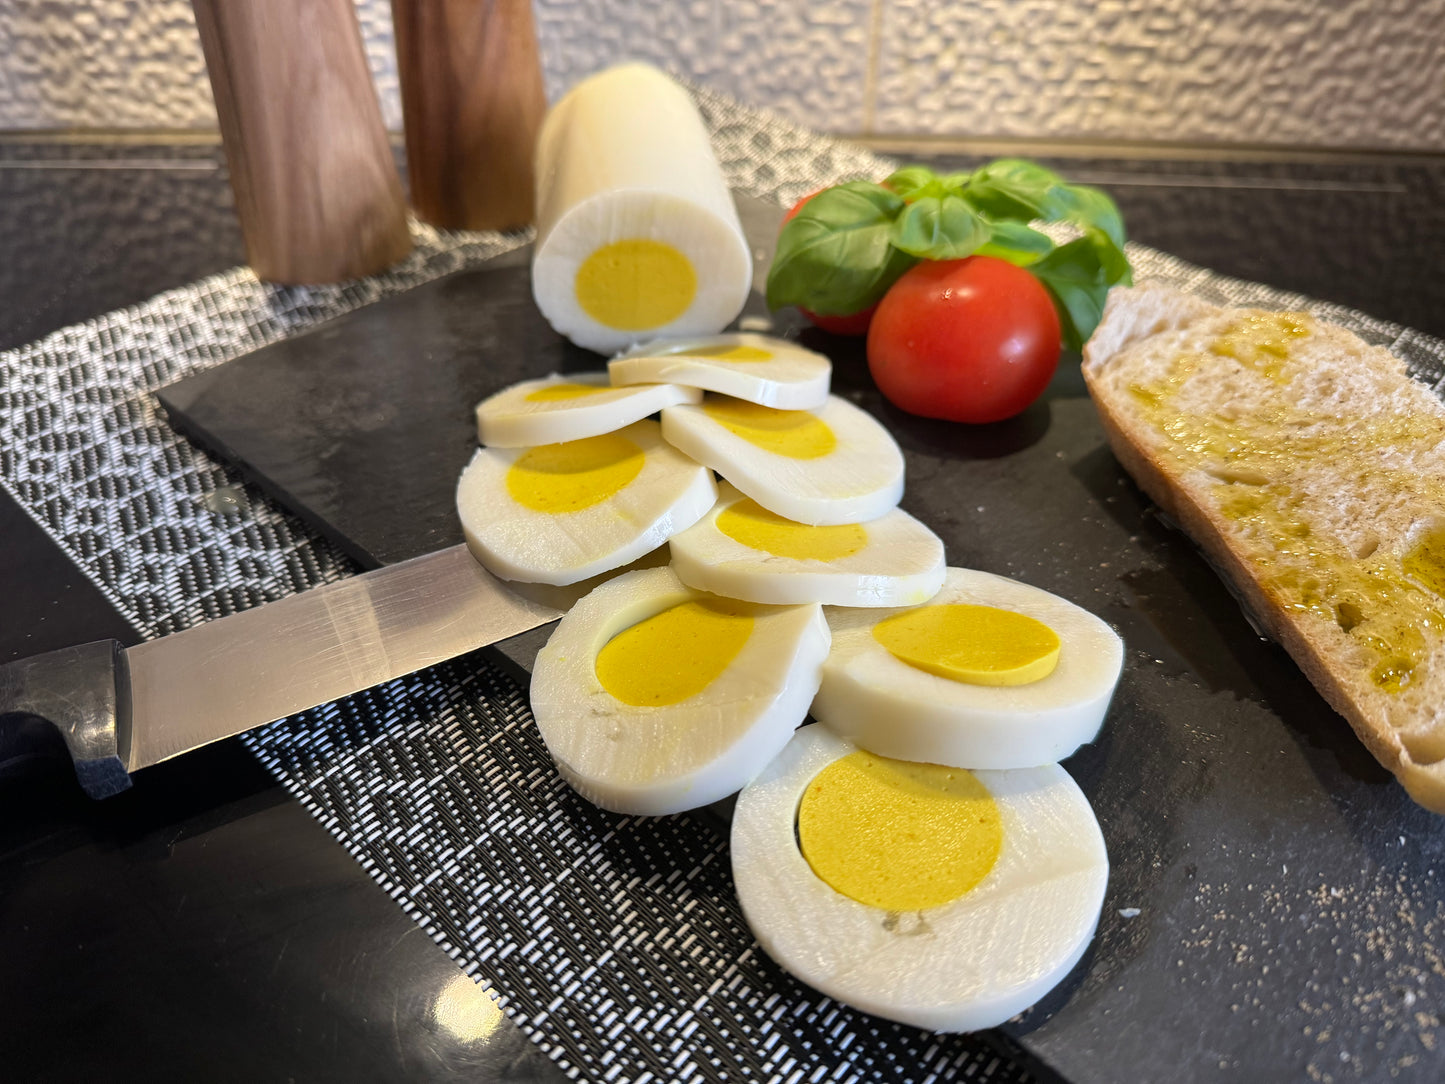 Sinless Eggs - Vegan Egg Roll. 300g Package.